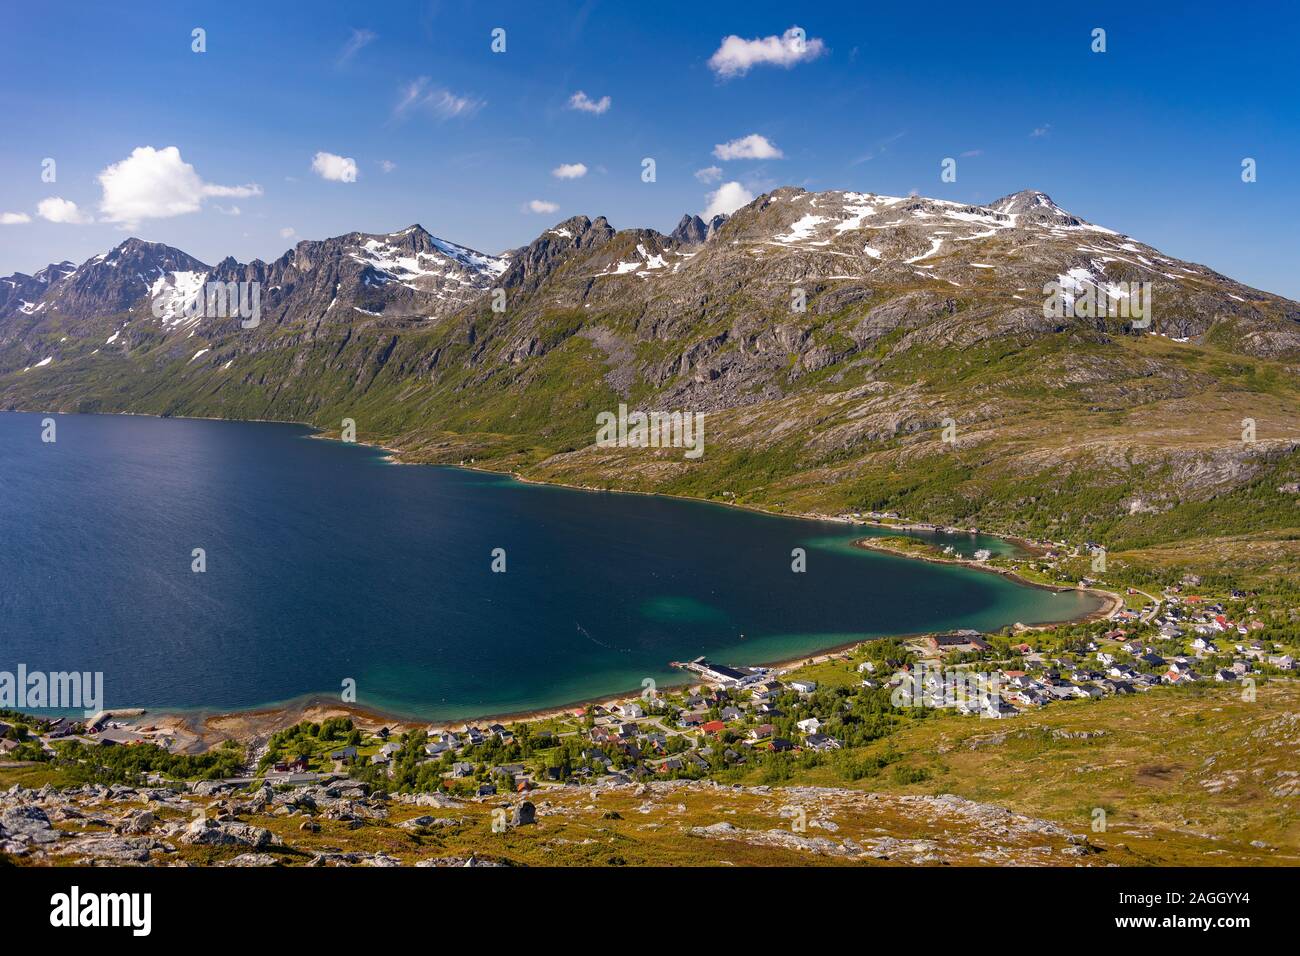 L'ÎLE DE KVALØYA, comté de Troms, NORVÈGE - Ville de Ersfjordbotn Ersfjorden et fjord, paysage de montagne dans le nord de la Norvège. Banque D'Images